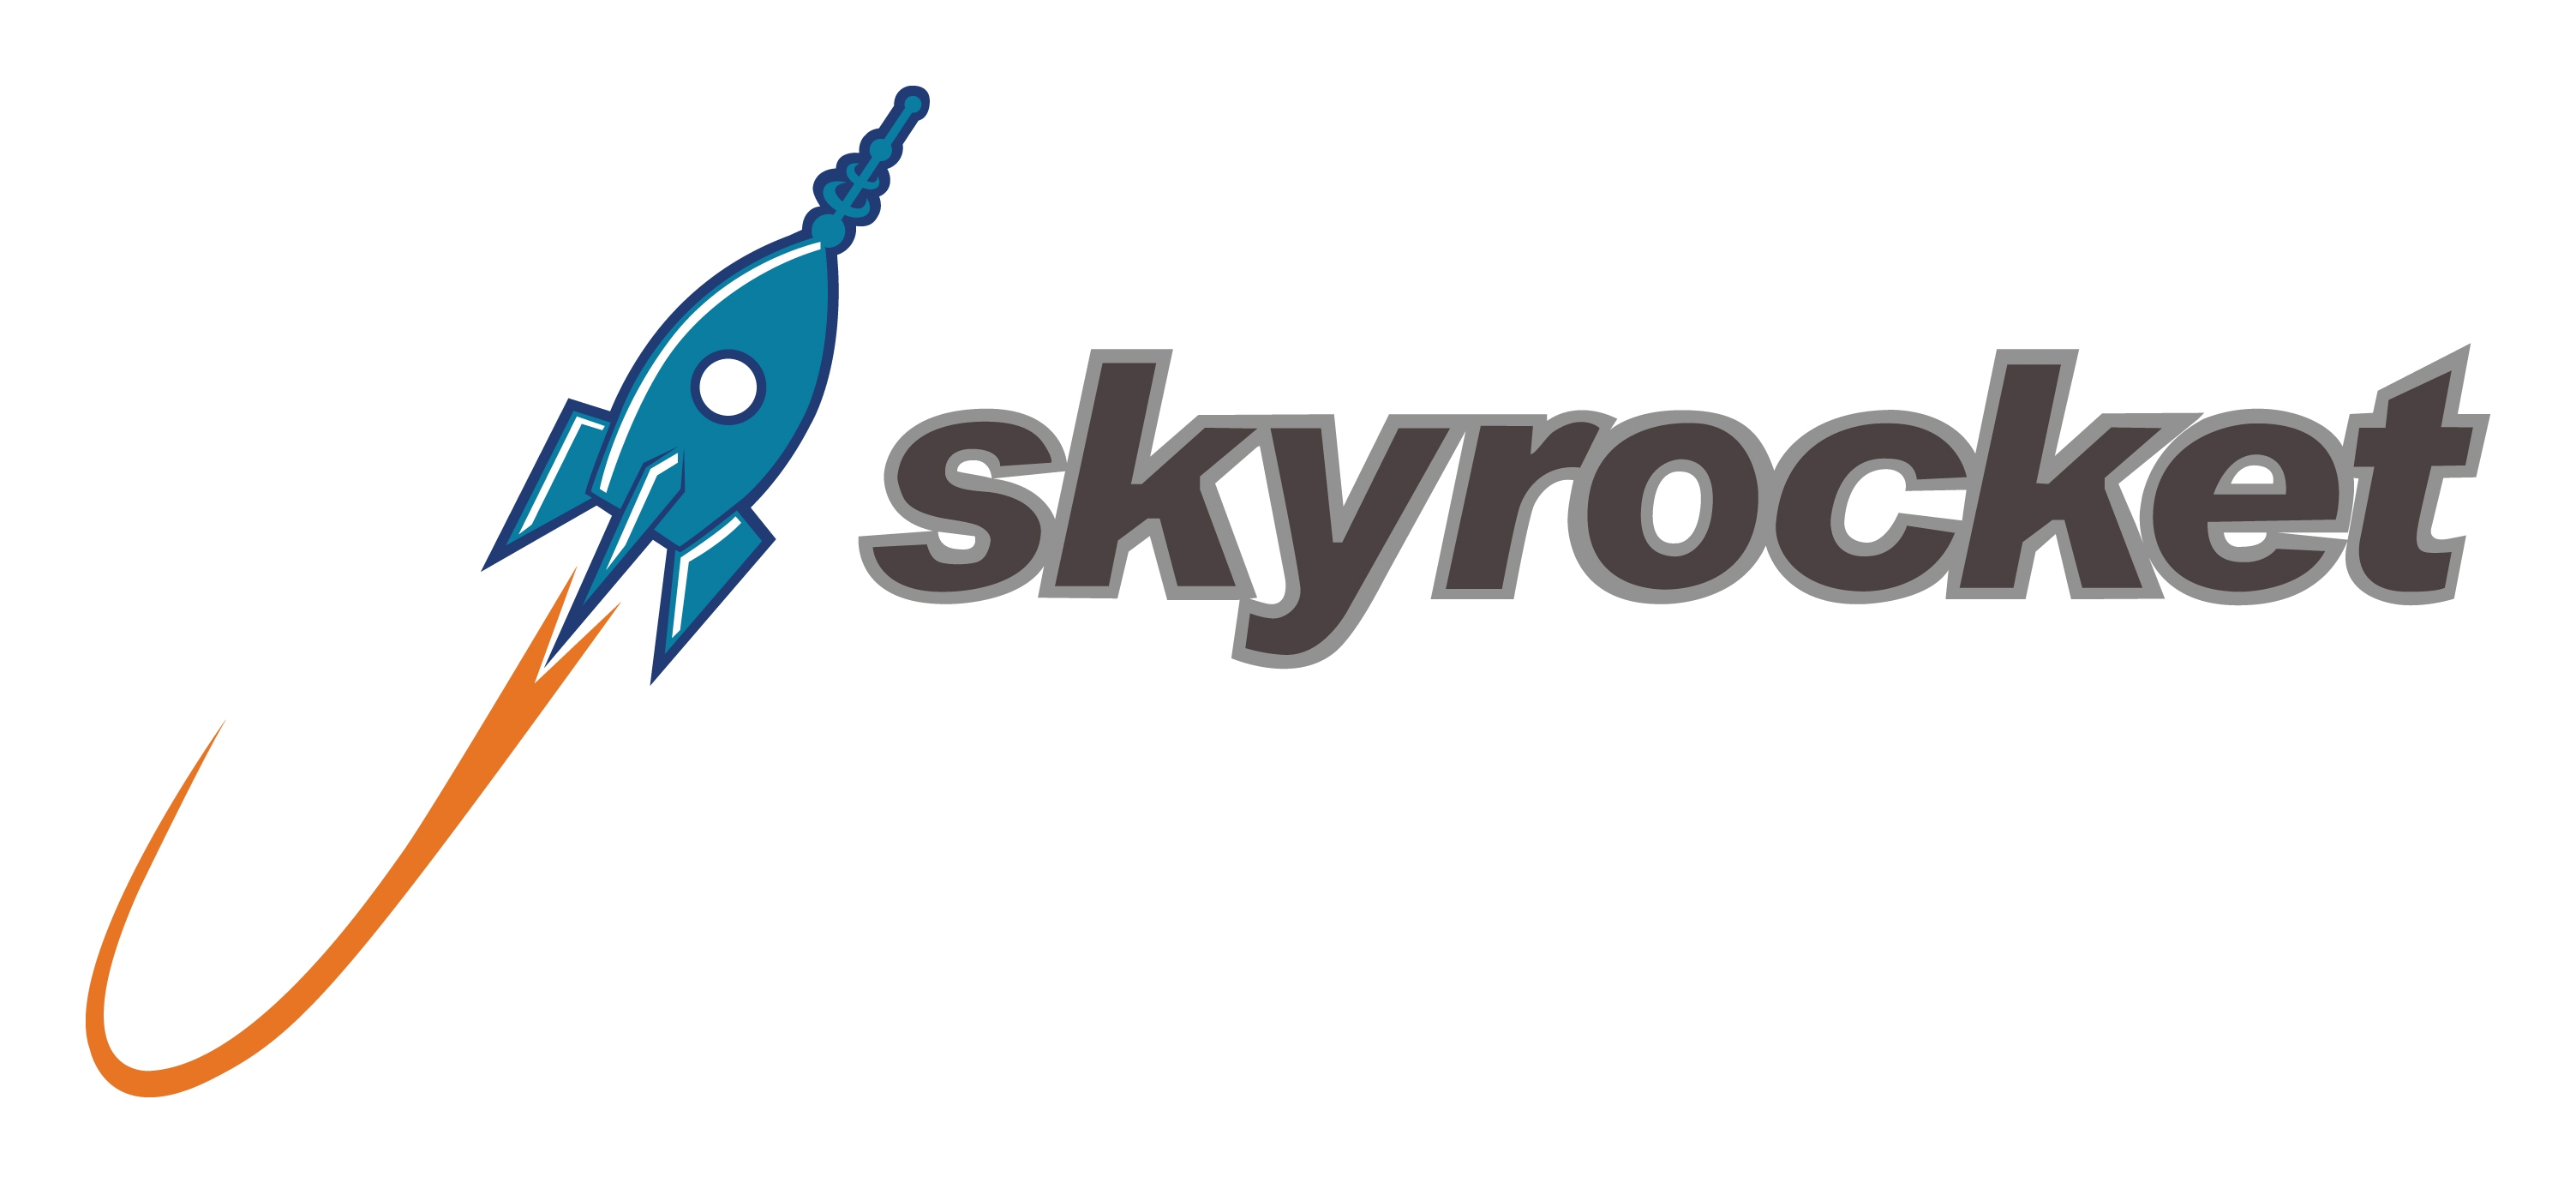 Skyrocket Logo Image